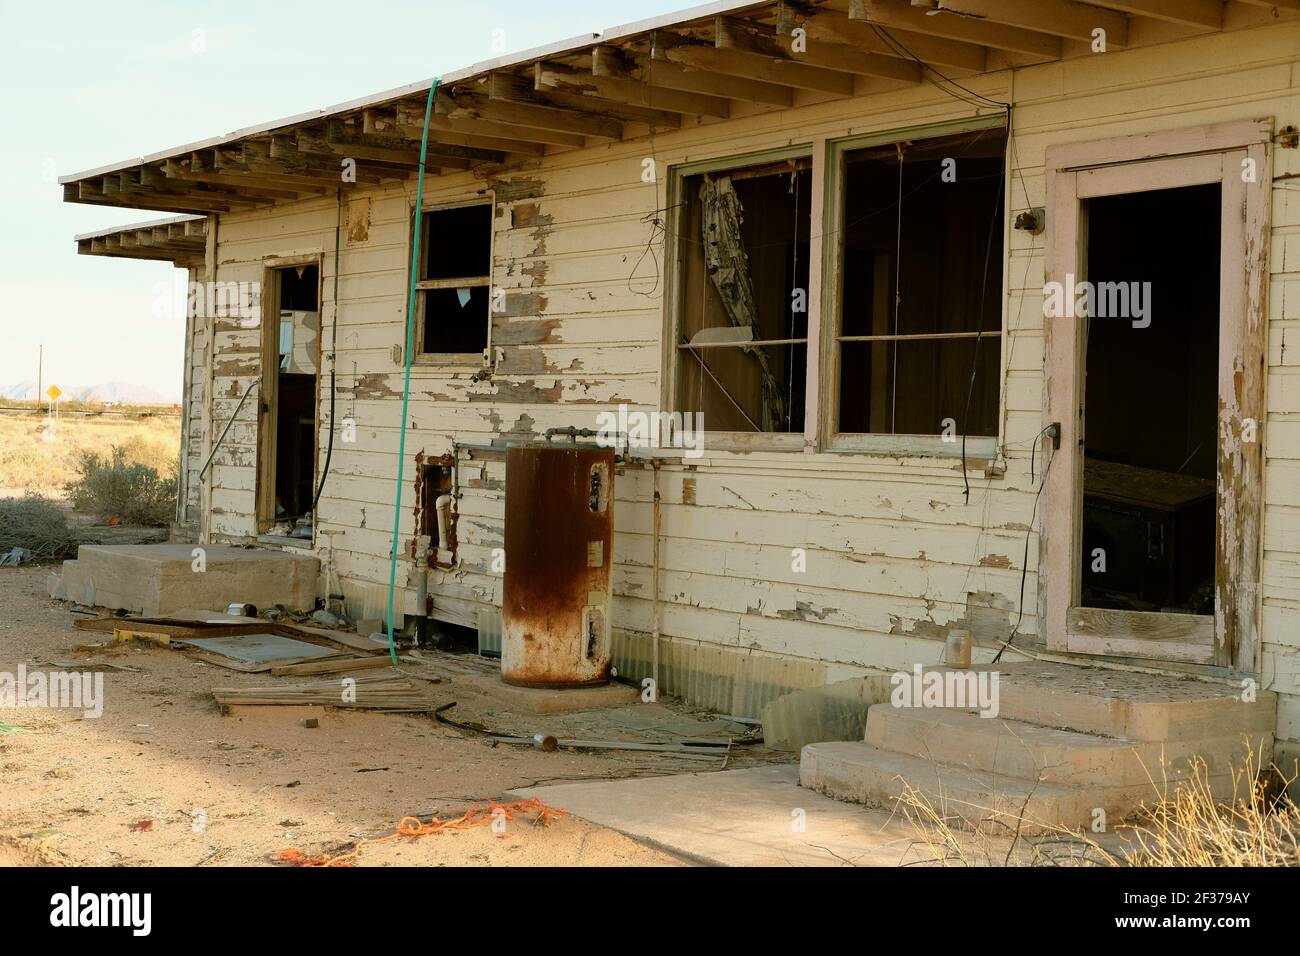 Außenansicht eines verlassenen Hauses in der Wüste von Arizona, in der Nähe von Roll und Wellton, Arizona USA; Verfall und verlassene Haus fallen auseinander, vergessen, verlassen. Stockfoto